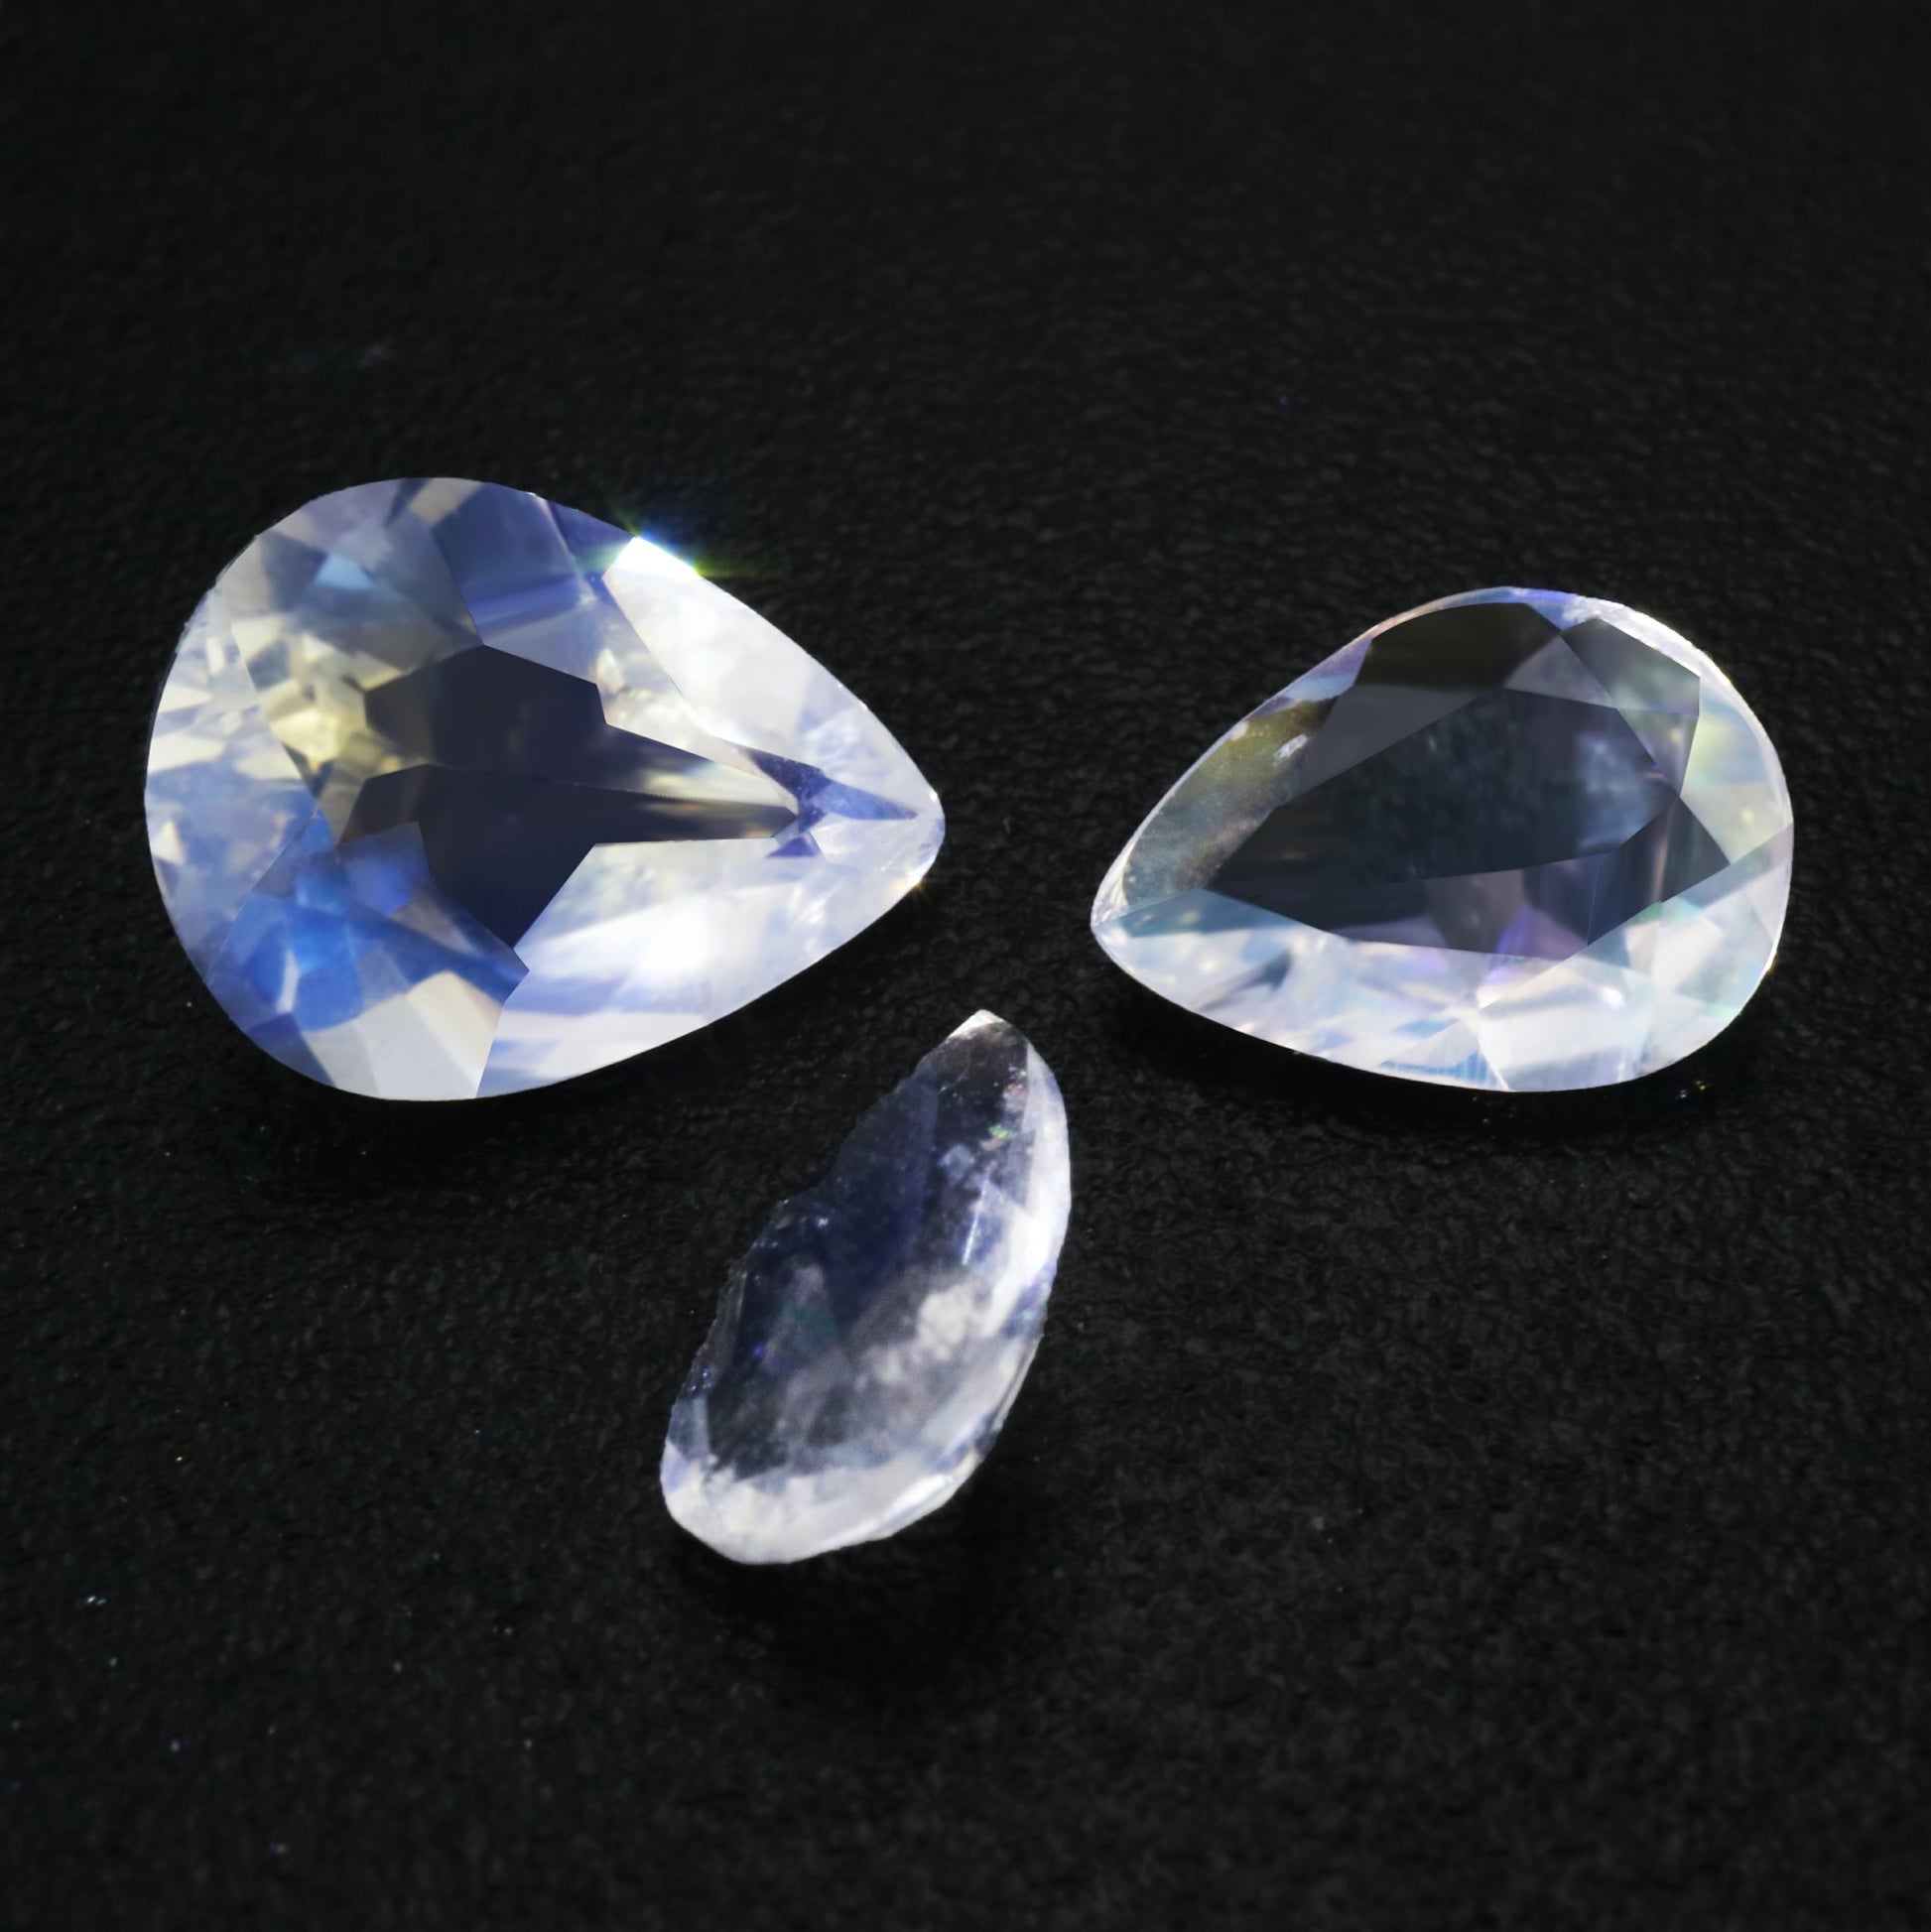 Three sparkling tear drop cut blue moonstones.